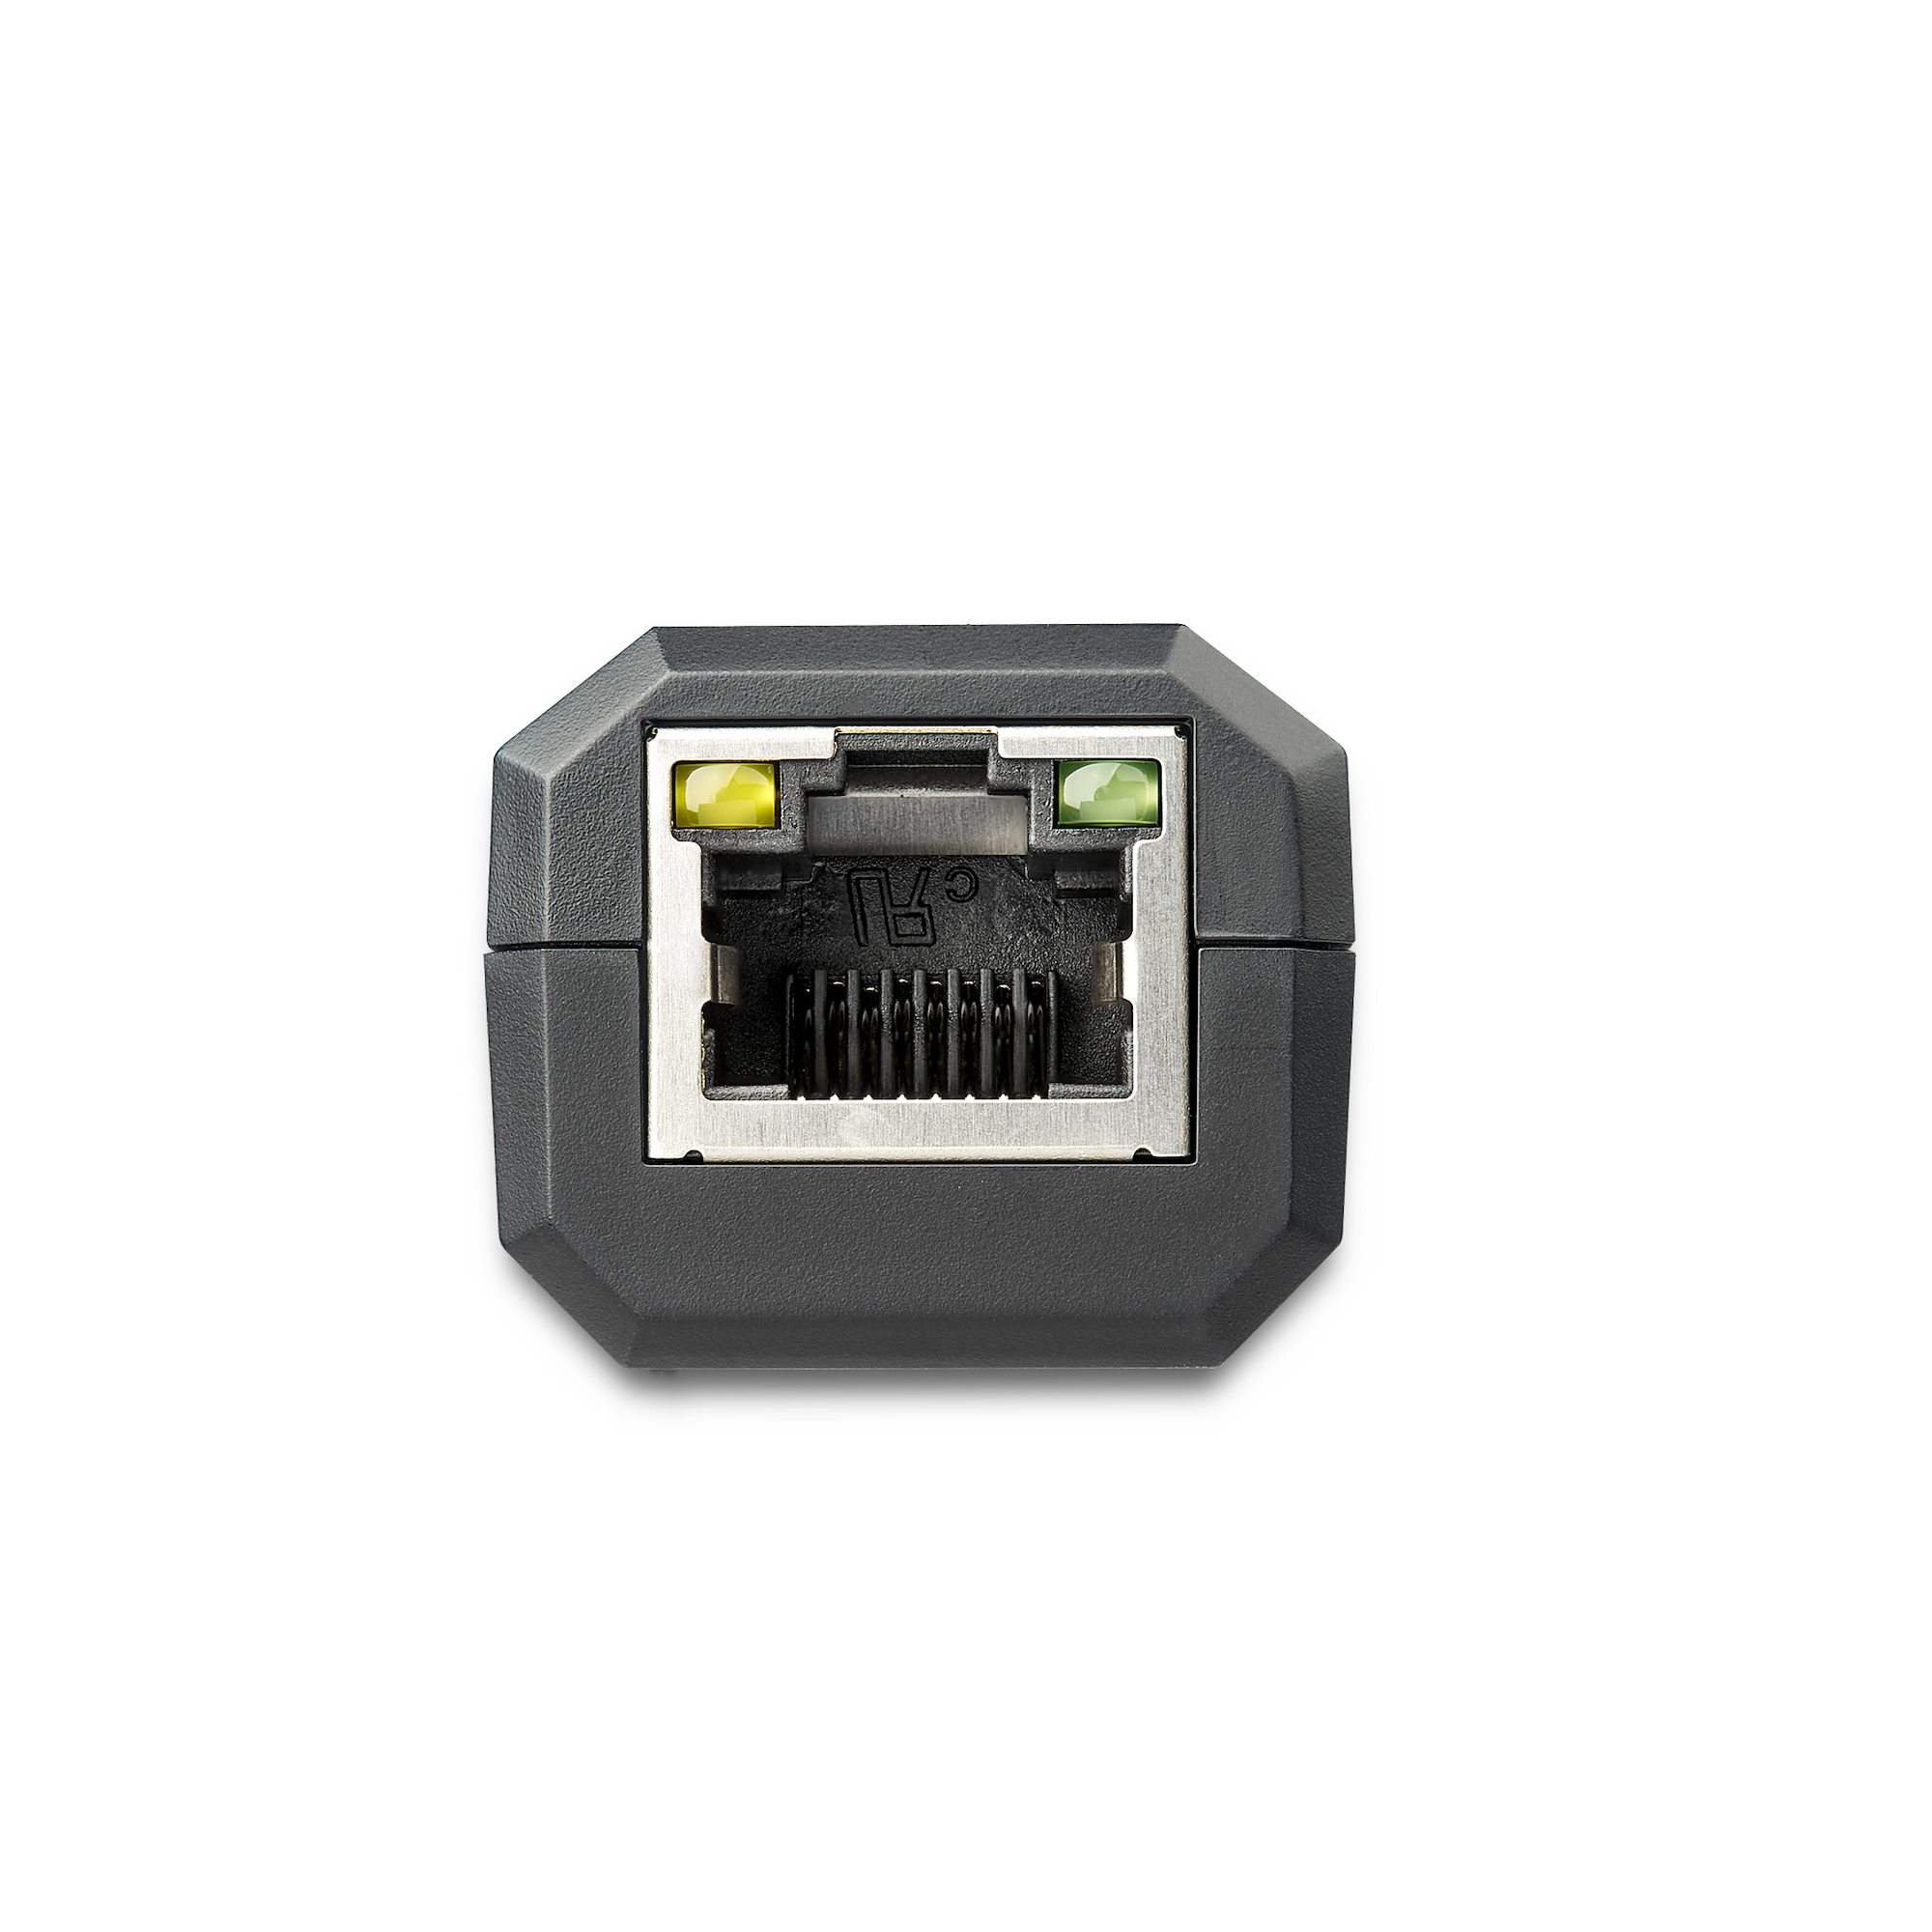 StarTech.com Adaptateur USB 3.0 vers Gigabit Ethernet pour Windows et Mac -  Convertisseur Réseau 10/100/1000 NIC - Adaptateur Réseau USB vers RJ45 Gb  pour Ordinateurs Portables et de Bureau - Alimenté par